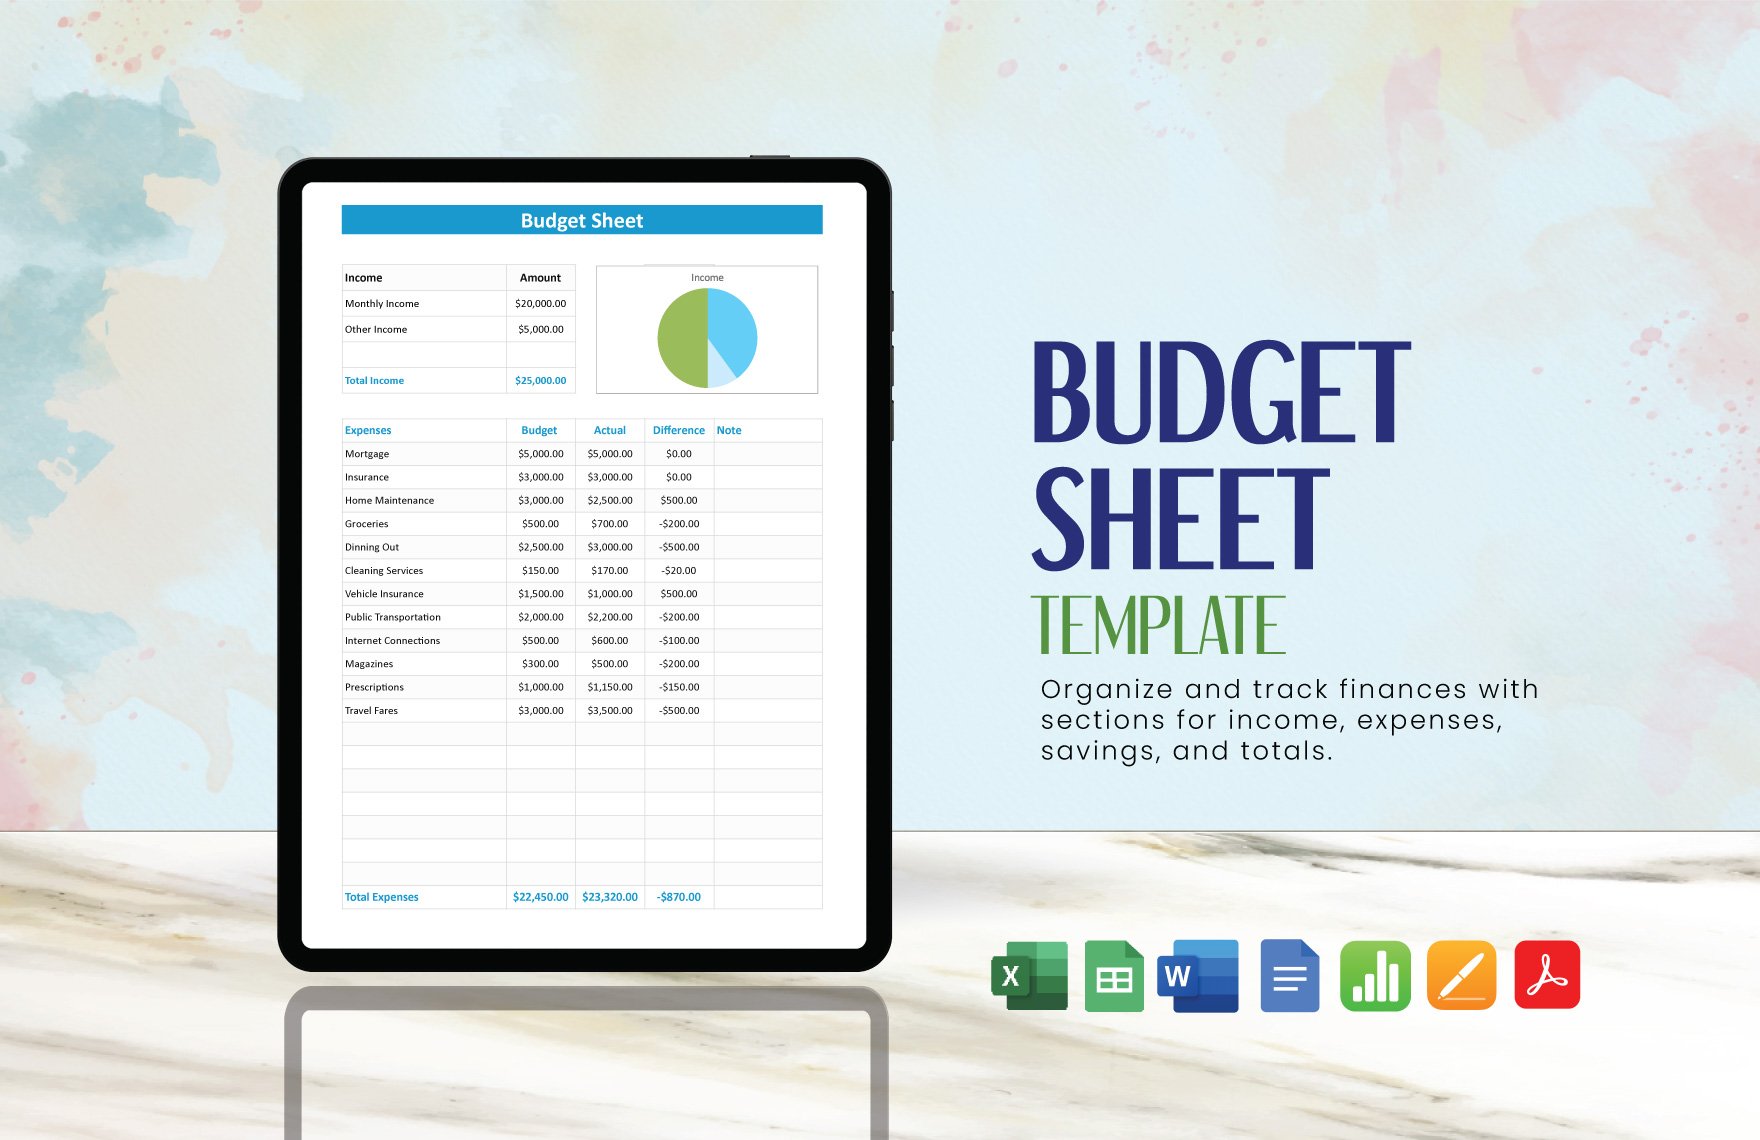 Budget Sheet Template